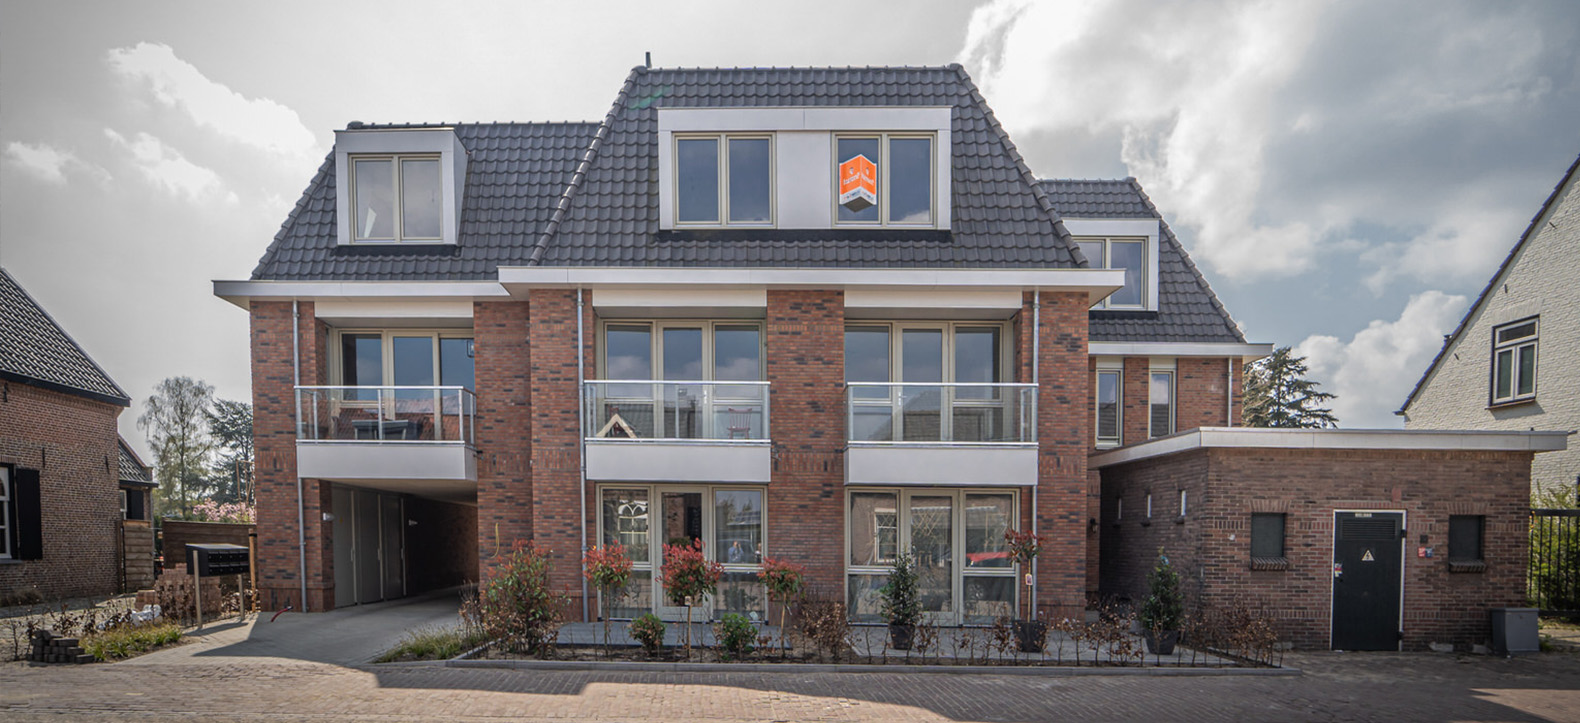 Broodhuis, Berlicum gemeente Sint-Michielsgestel | By Brekel